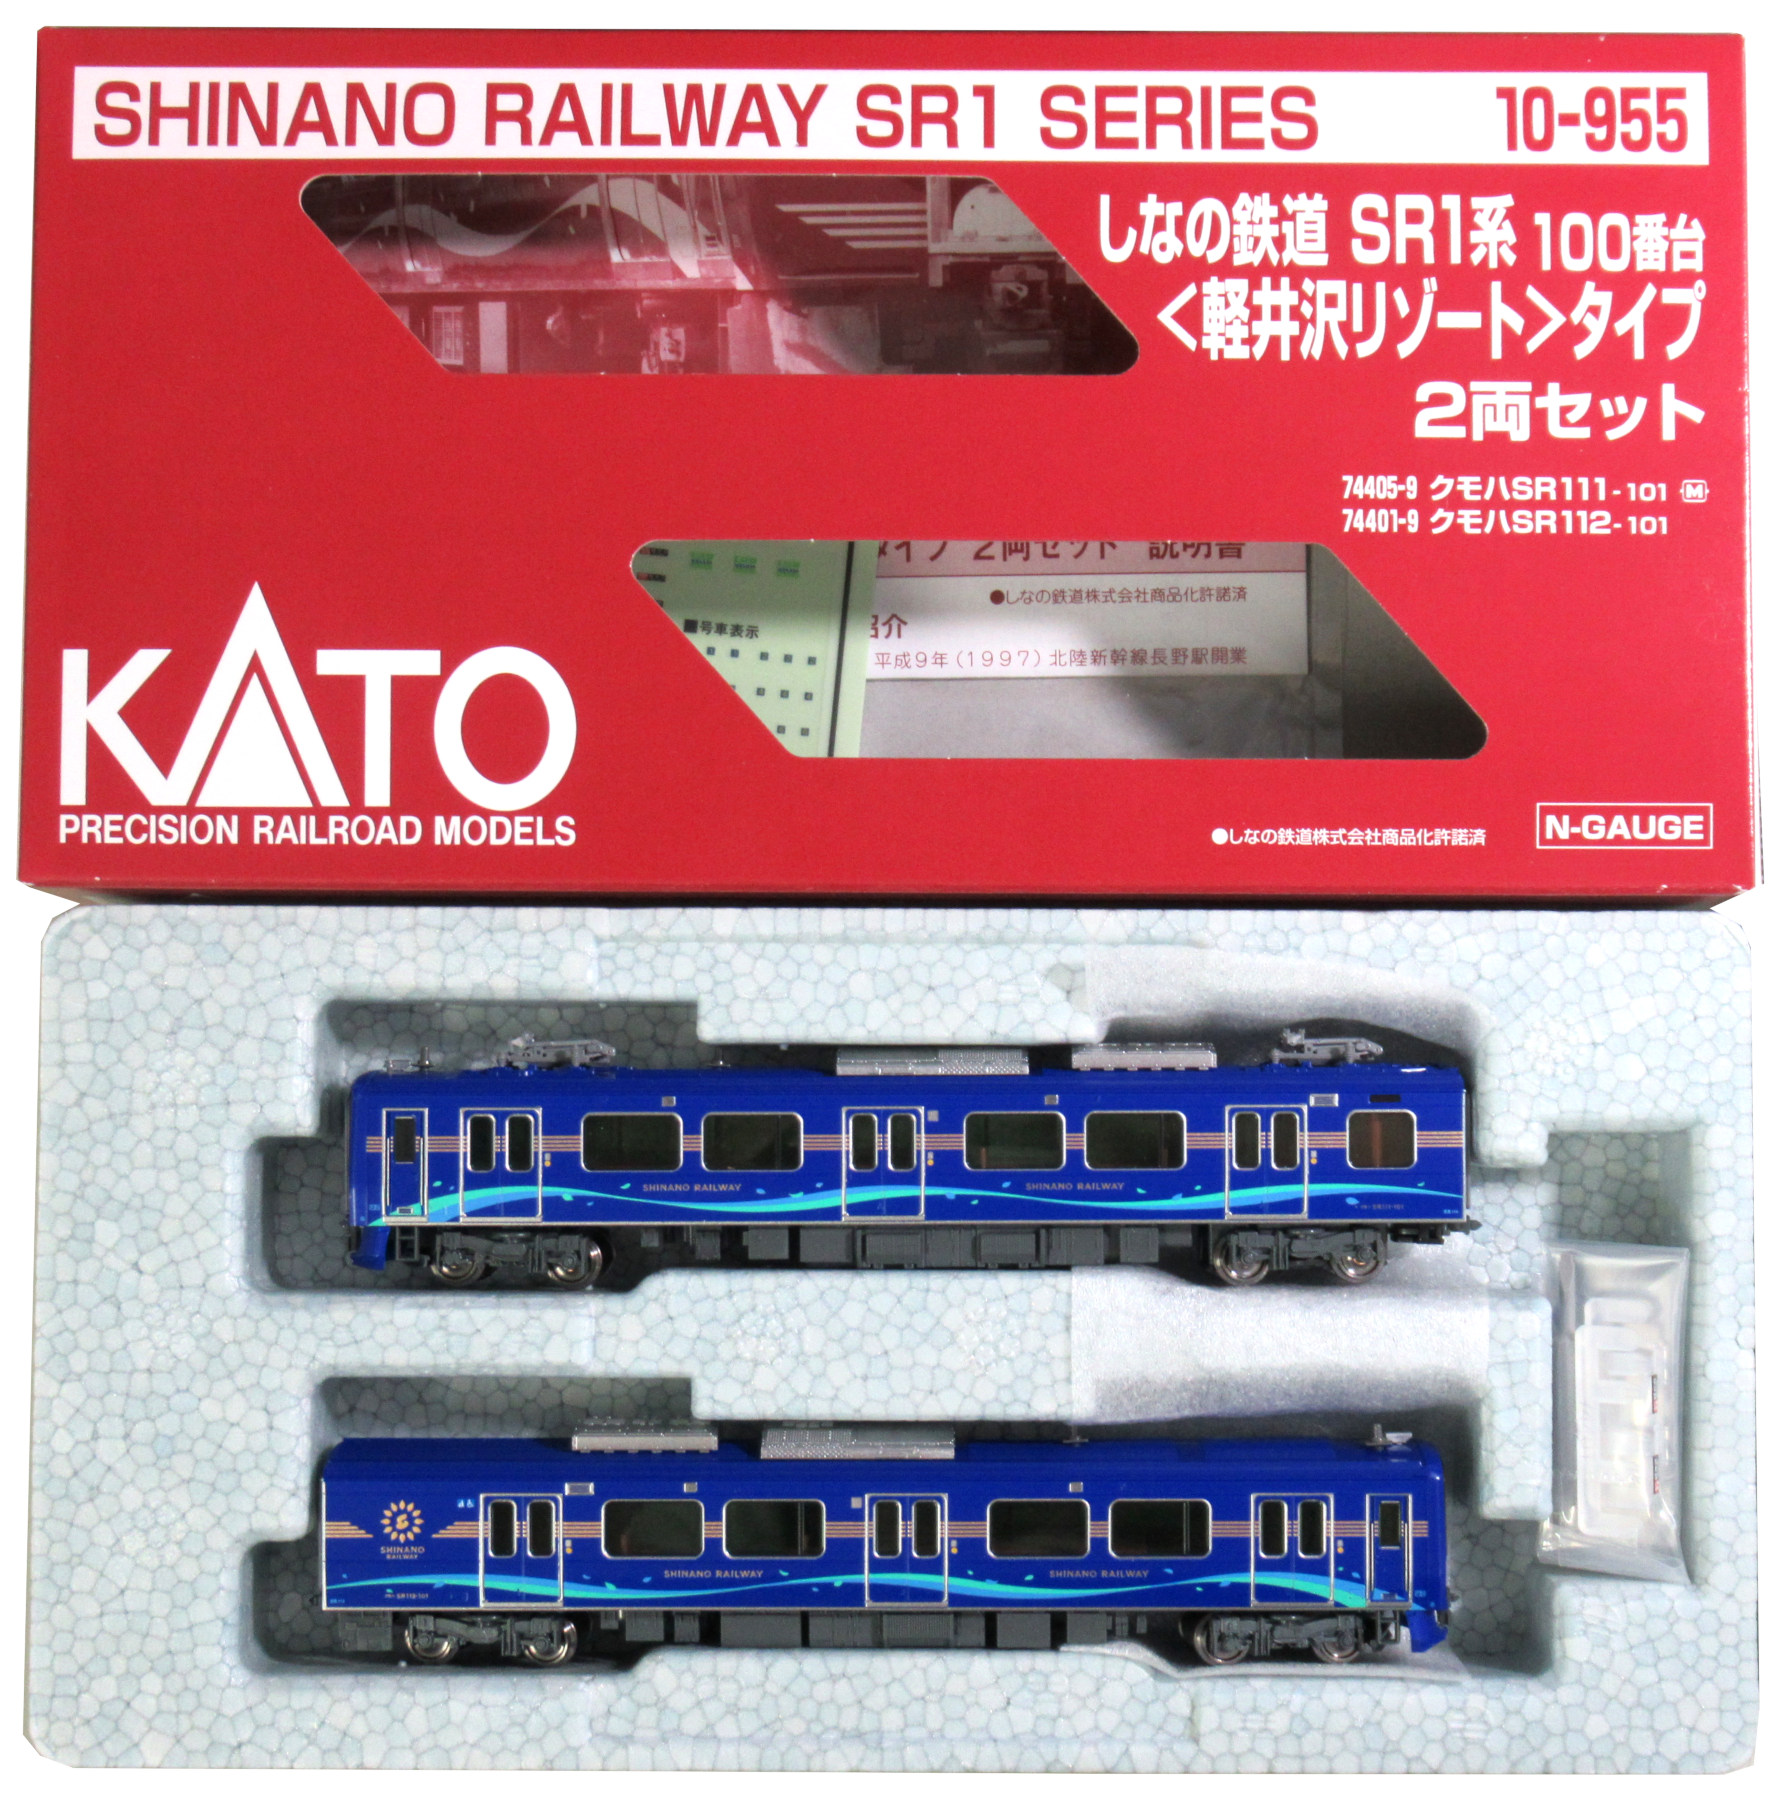 上品】 【新品】KATO しなの鉄道 SR1系100番台 軽井沢リゾートタイプ 2 ...